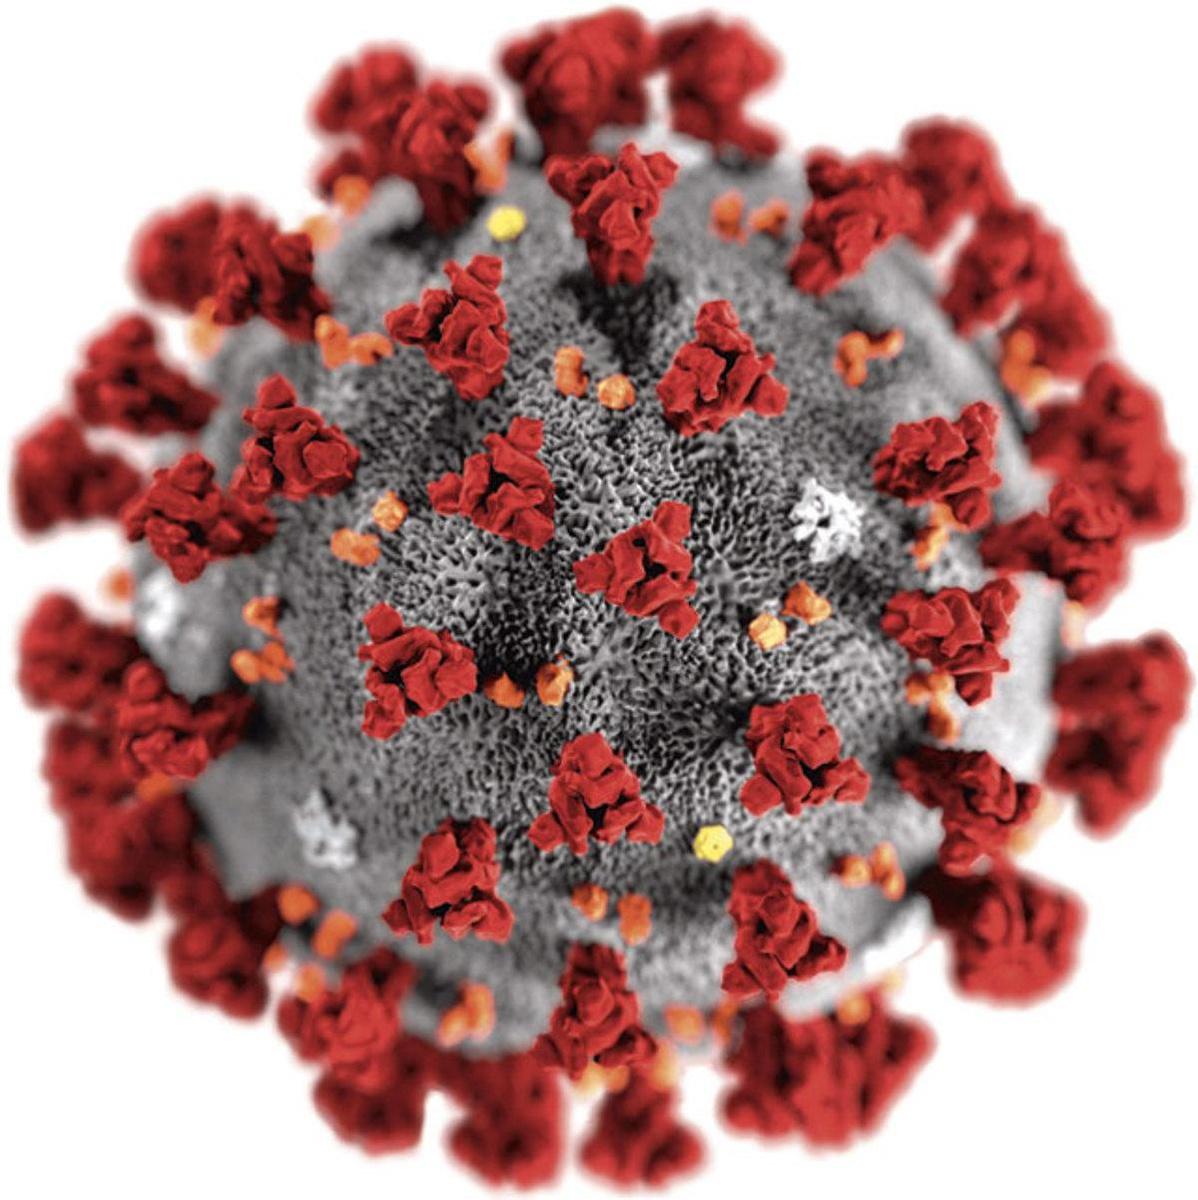 De strijd tegen het coronavirus: 'Een massale klopjacht op vleermuizen heeft geen zin'